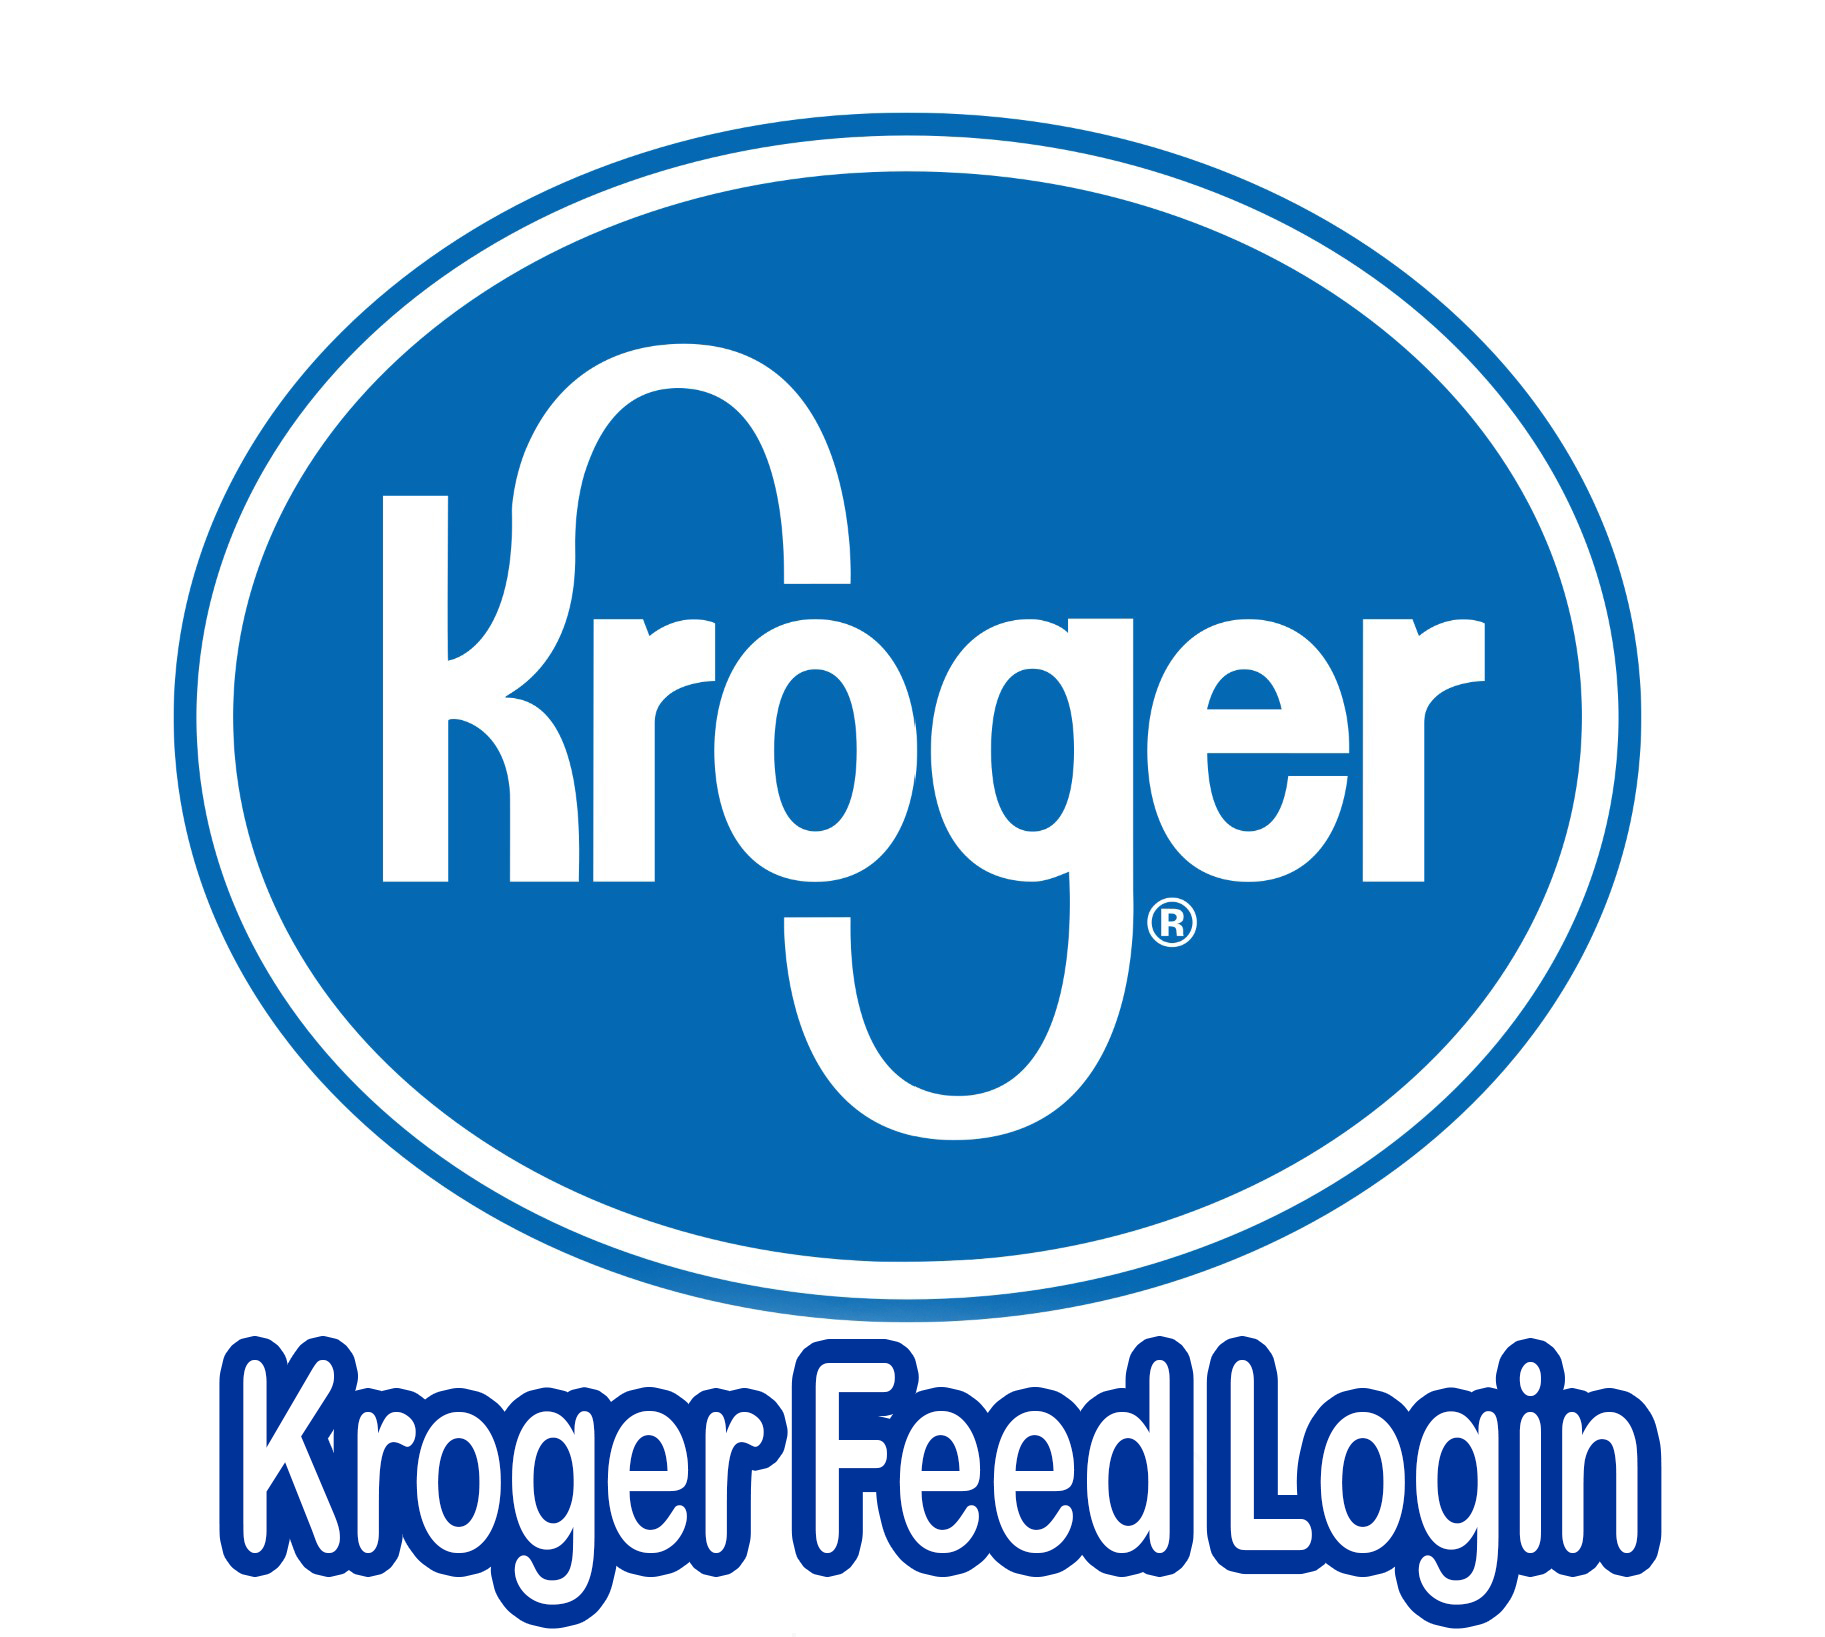 Kroger Feed Login - Kroger Feed Login Requirements